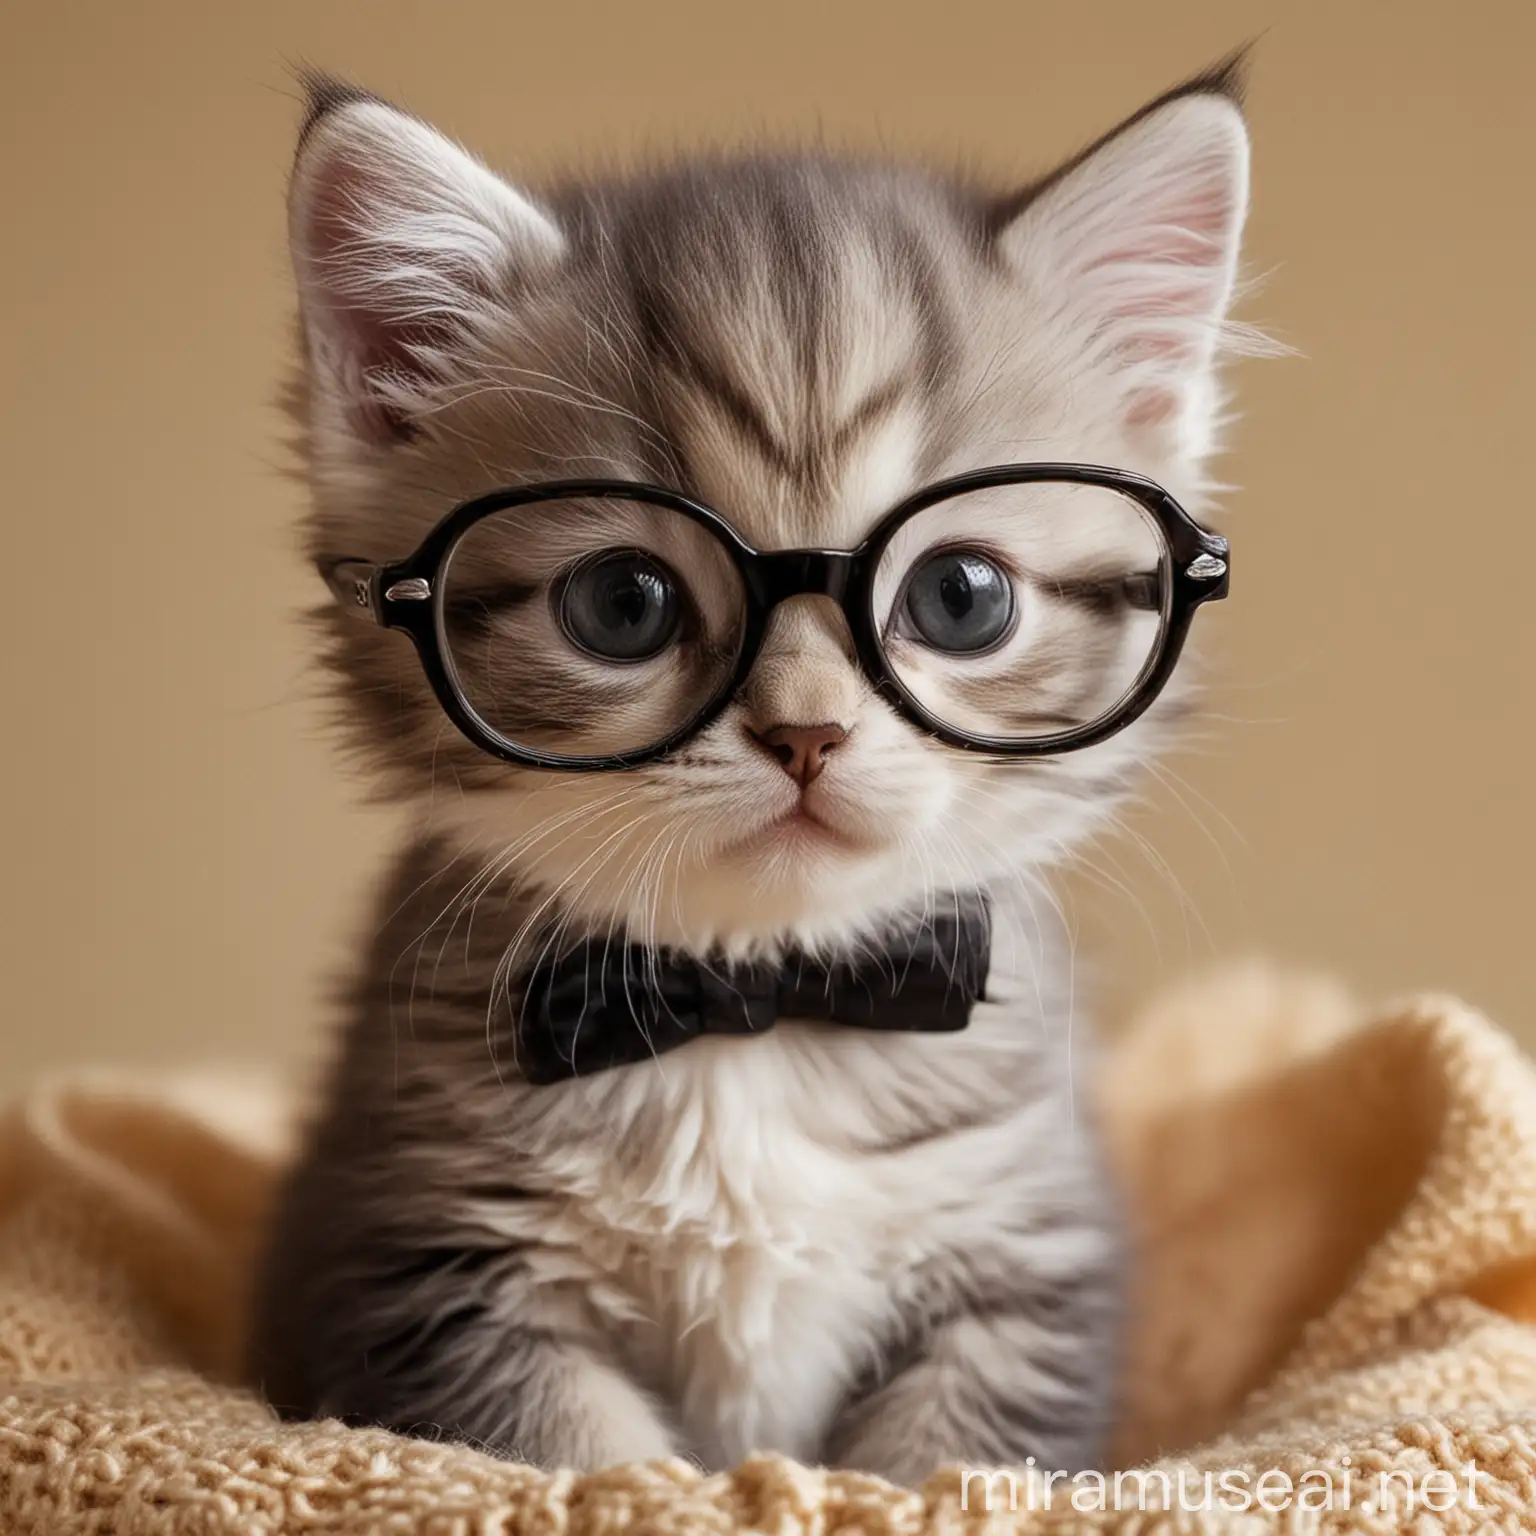 Adorable Kitten Wearing Glasses Cute Pet Portrait